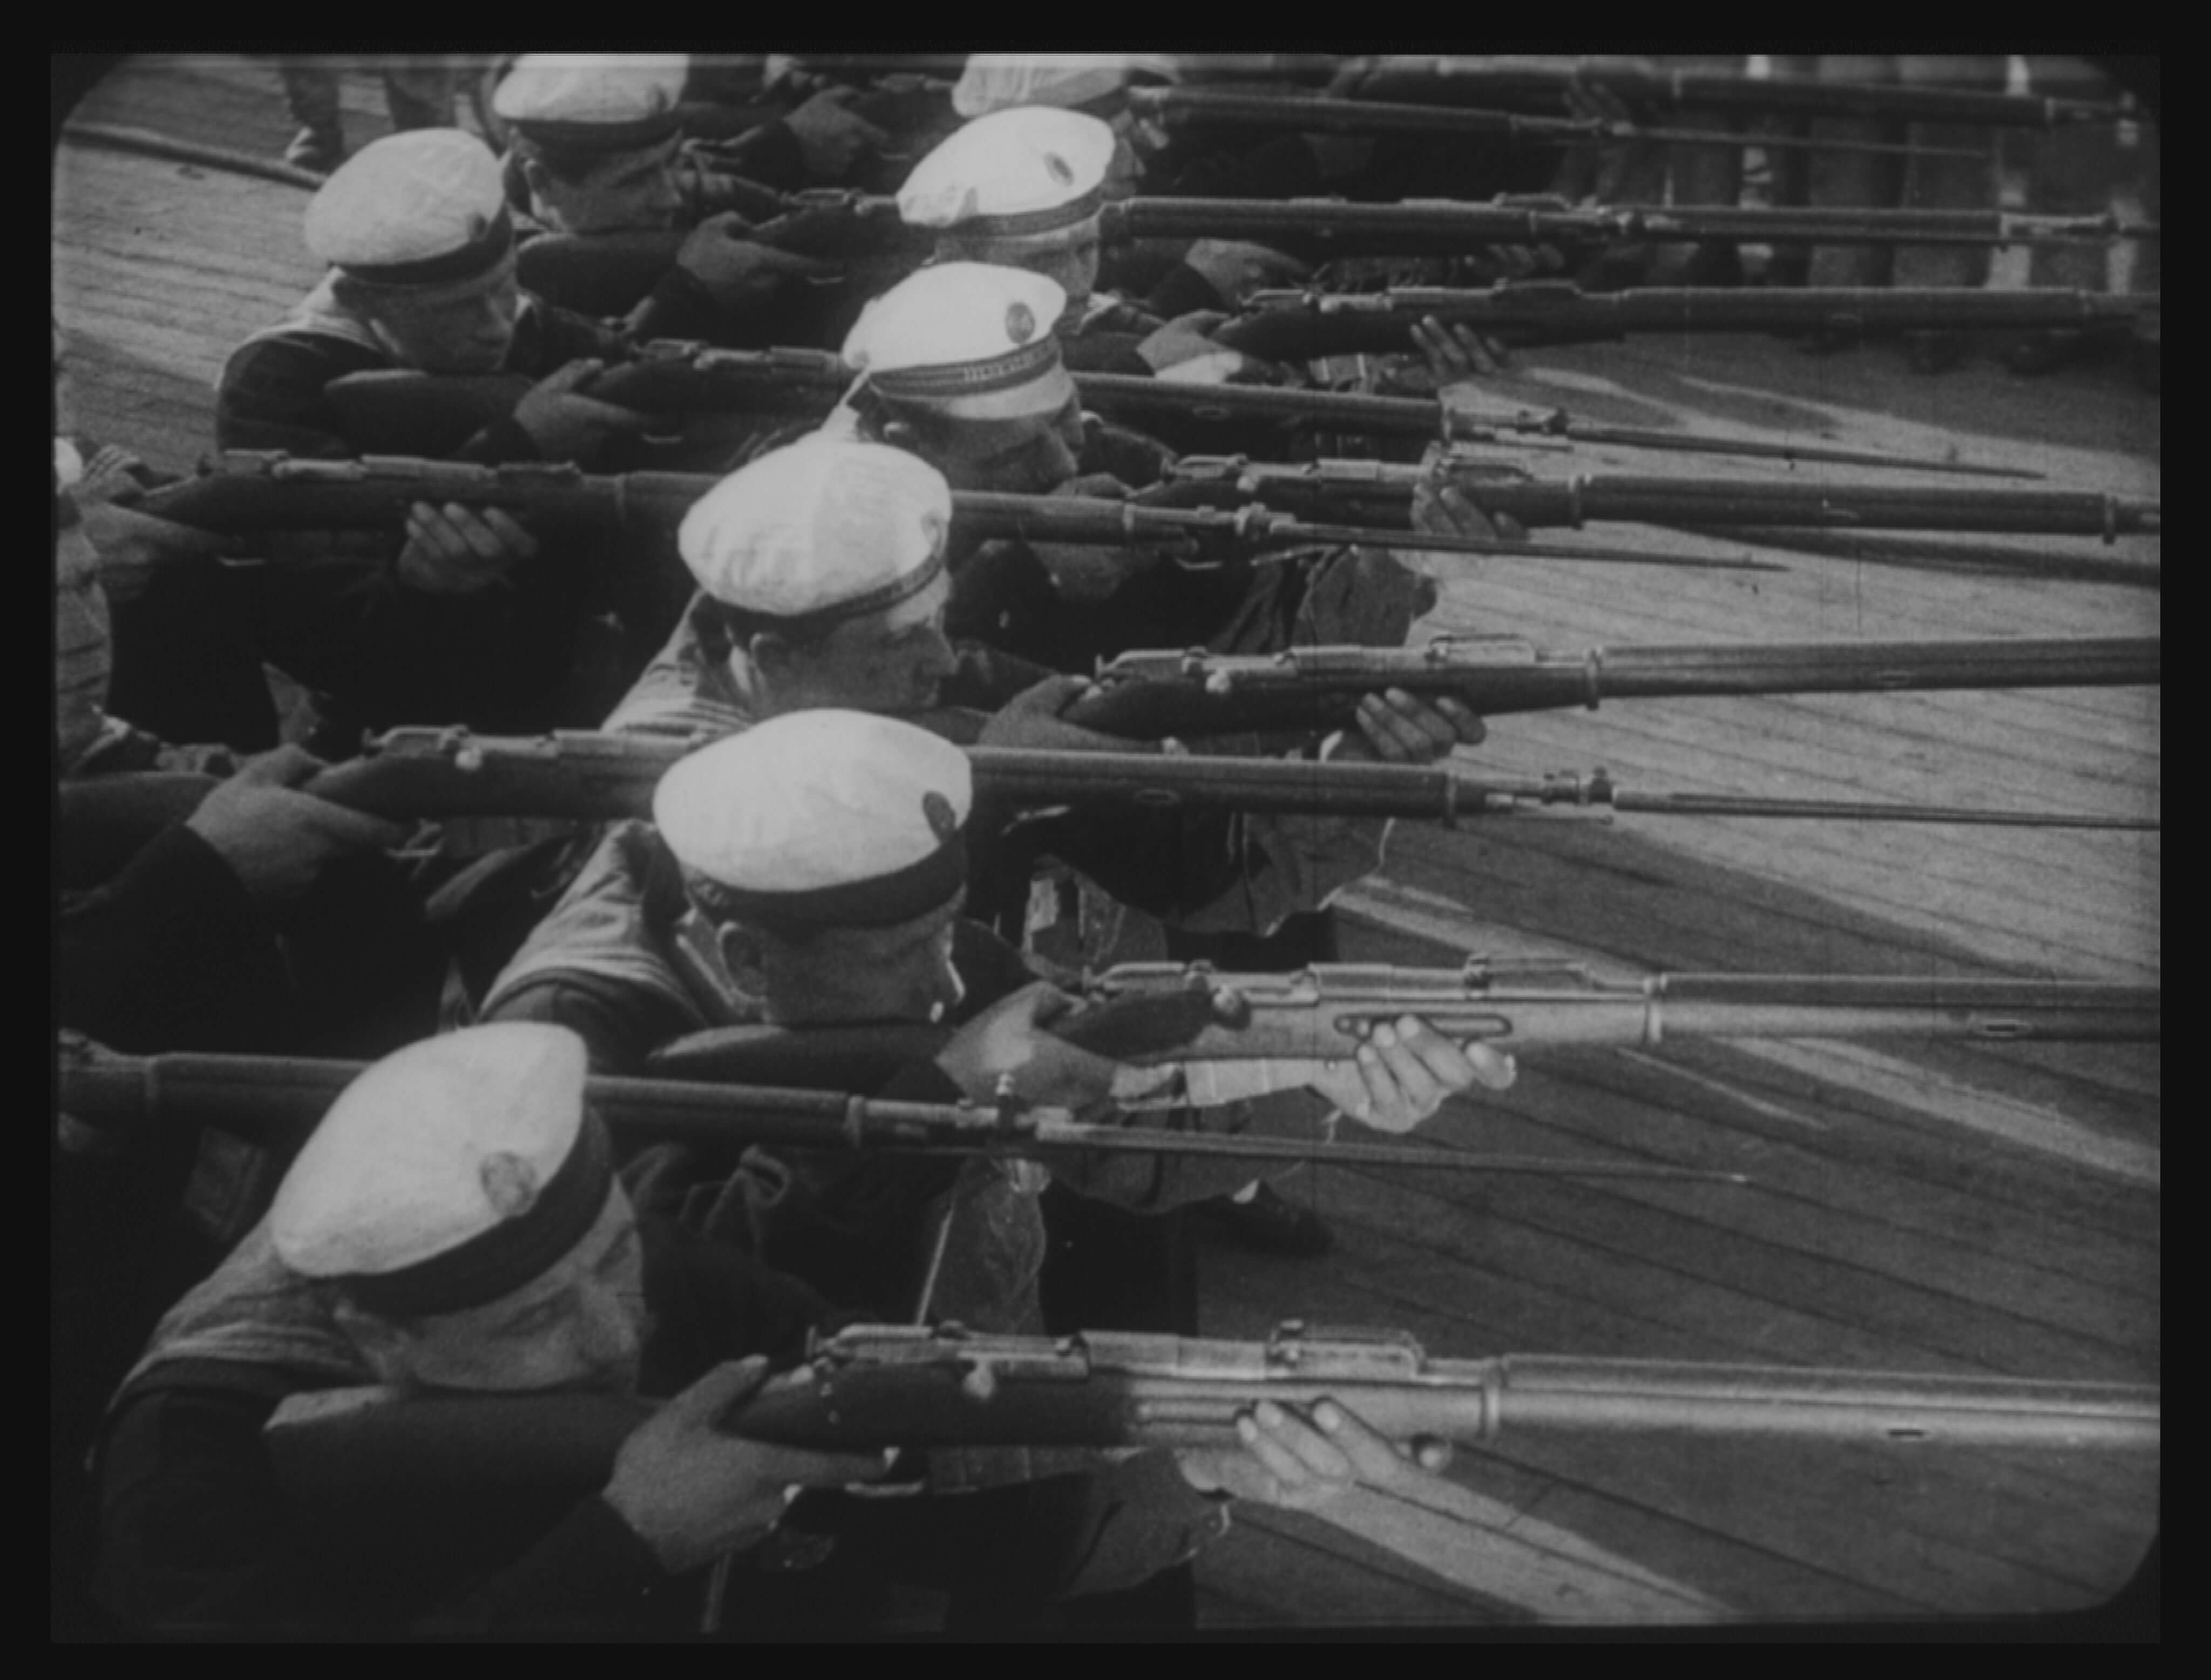 Sergei Eisenstein: Battleship Potemkin, USSR, 1925 (Still). Gosfilmofond of Russia, Moscow